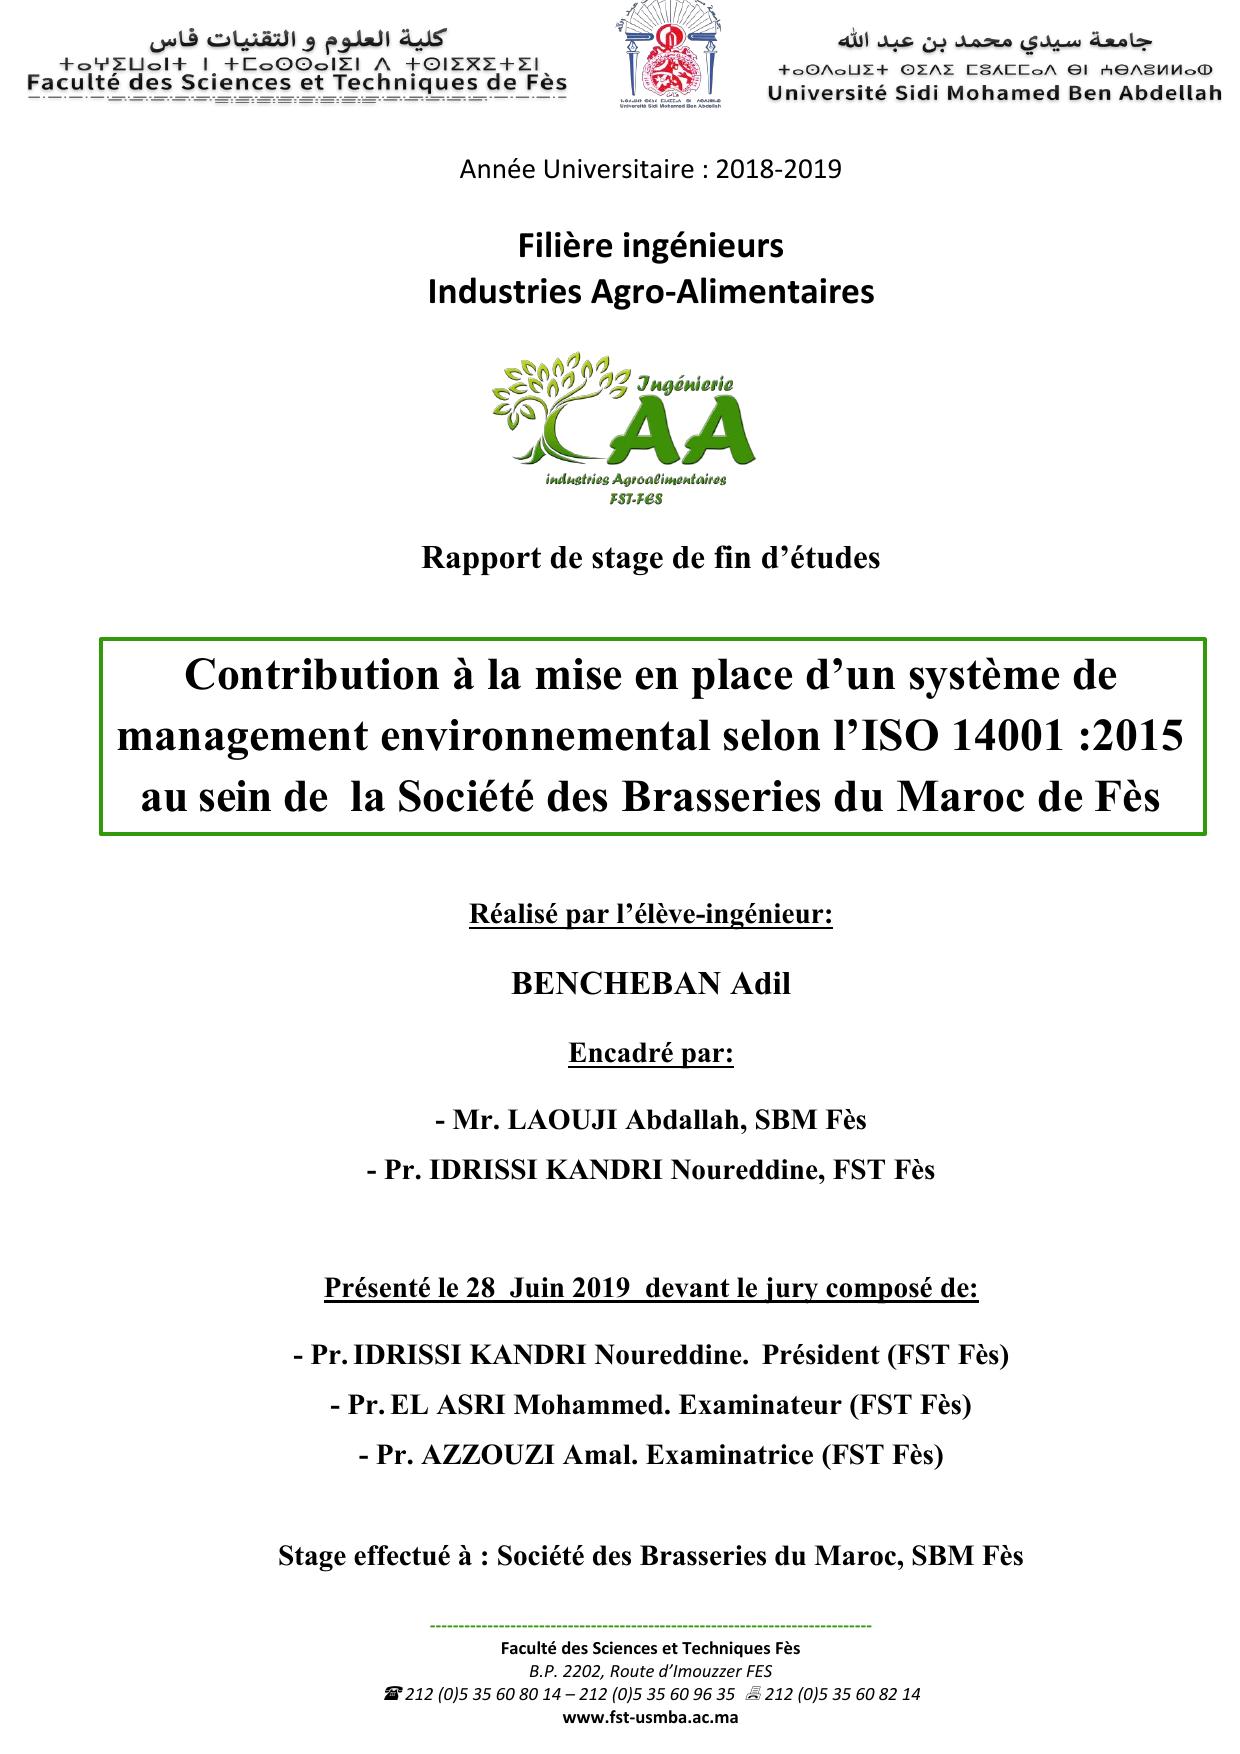 Contribution à la mise en place d’un système de management environnemental selon l’ISO 14001 :2015 au sein de la Société des Brasseries du Maroc de Fès